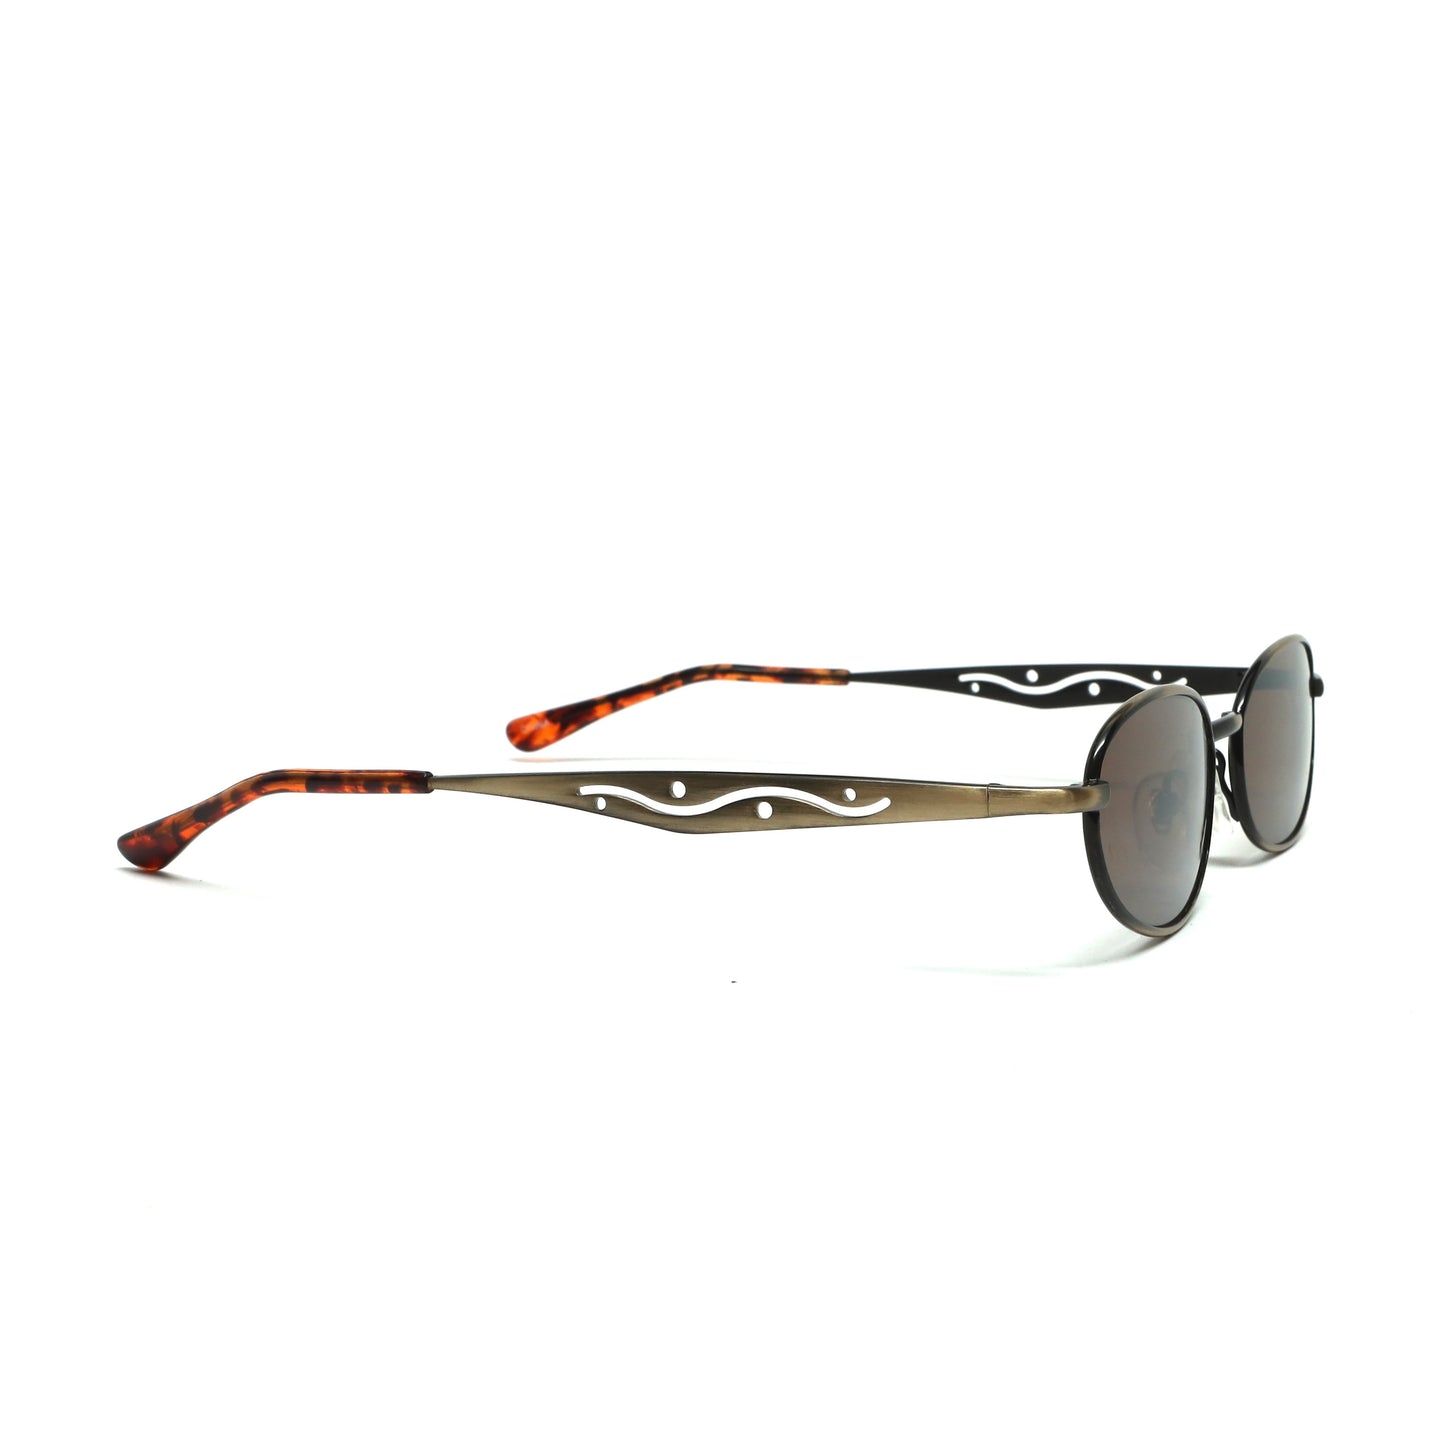 //Style M28// Small Size Mini 90s Deadstock Santa Fe Oval Sunglasses - Bronze